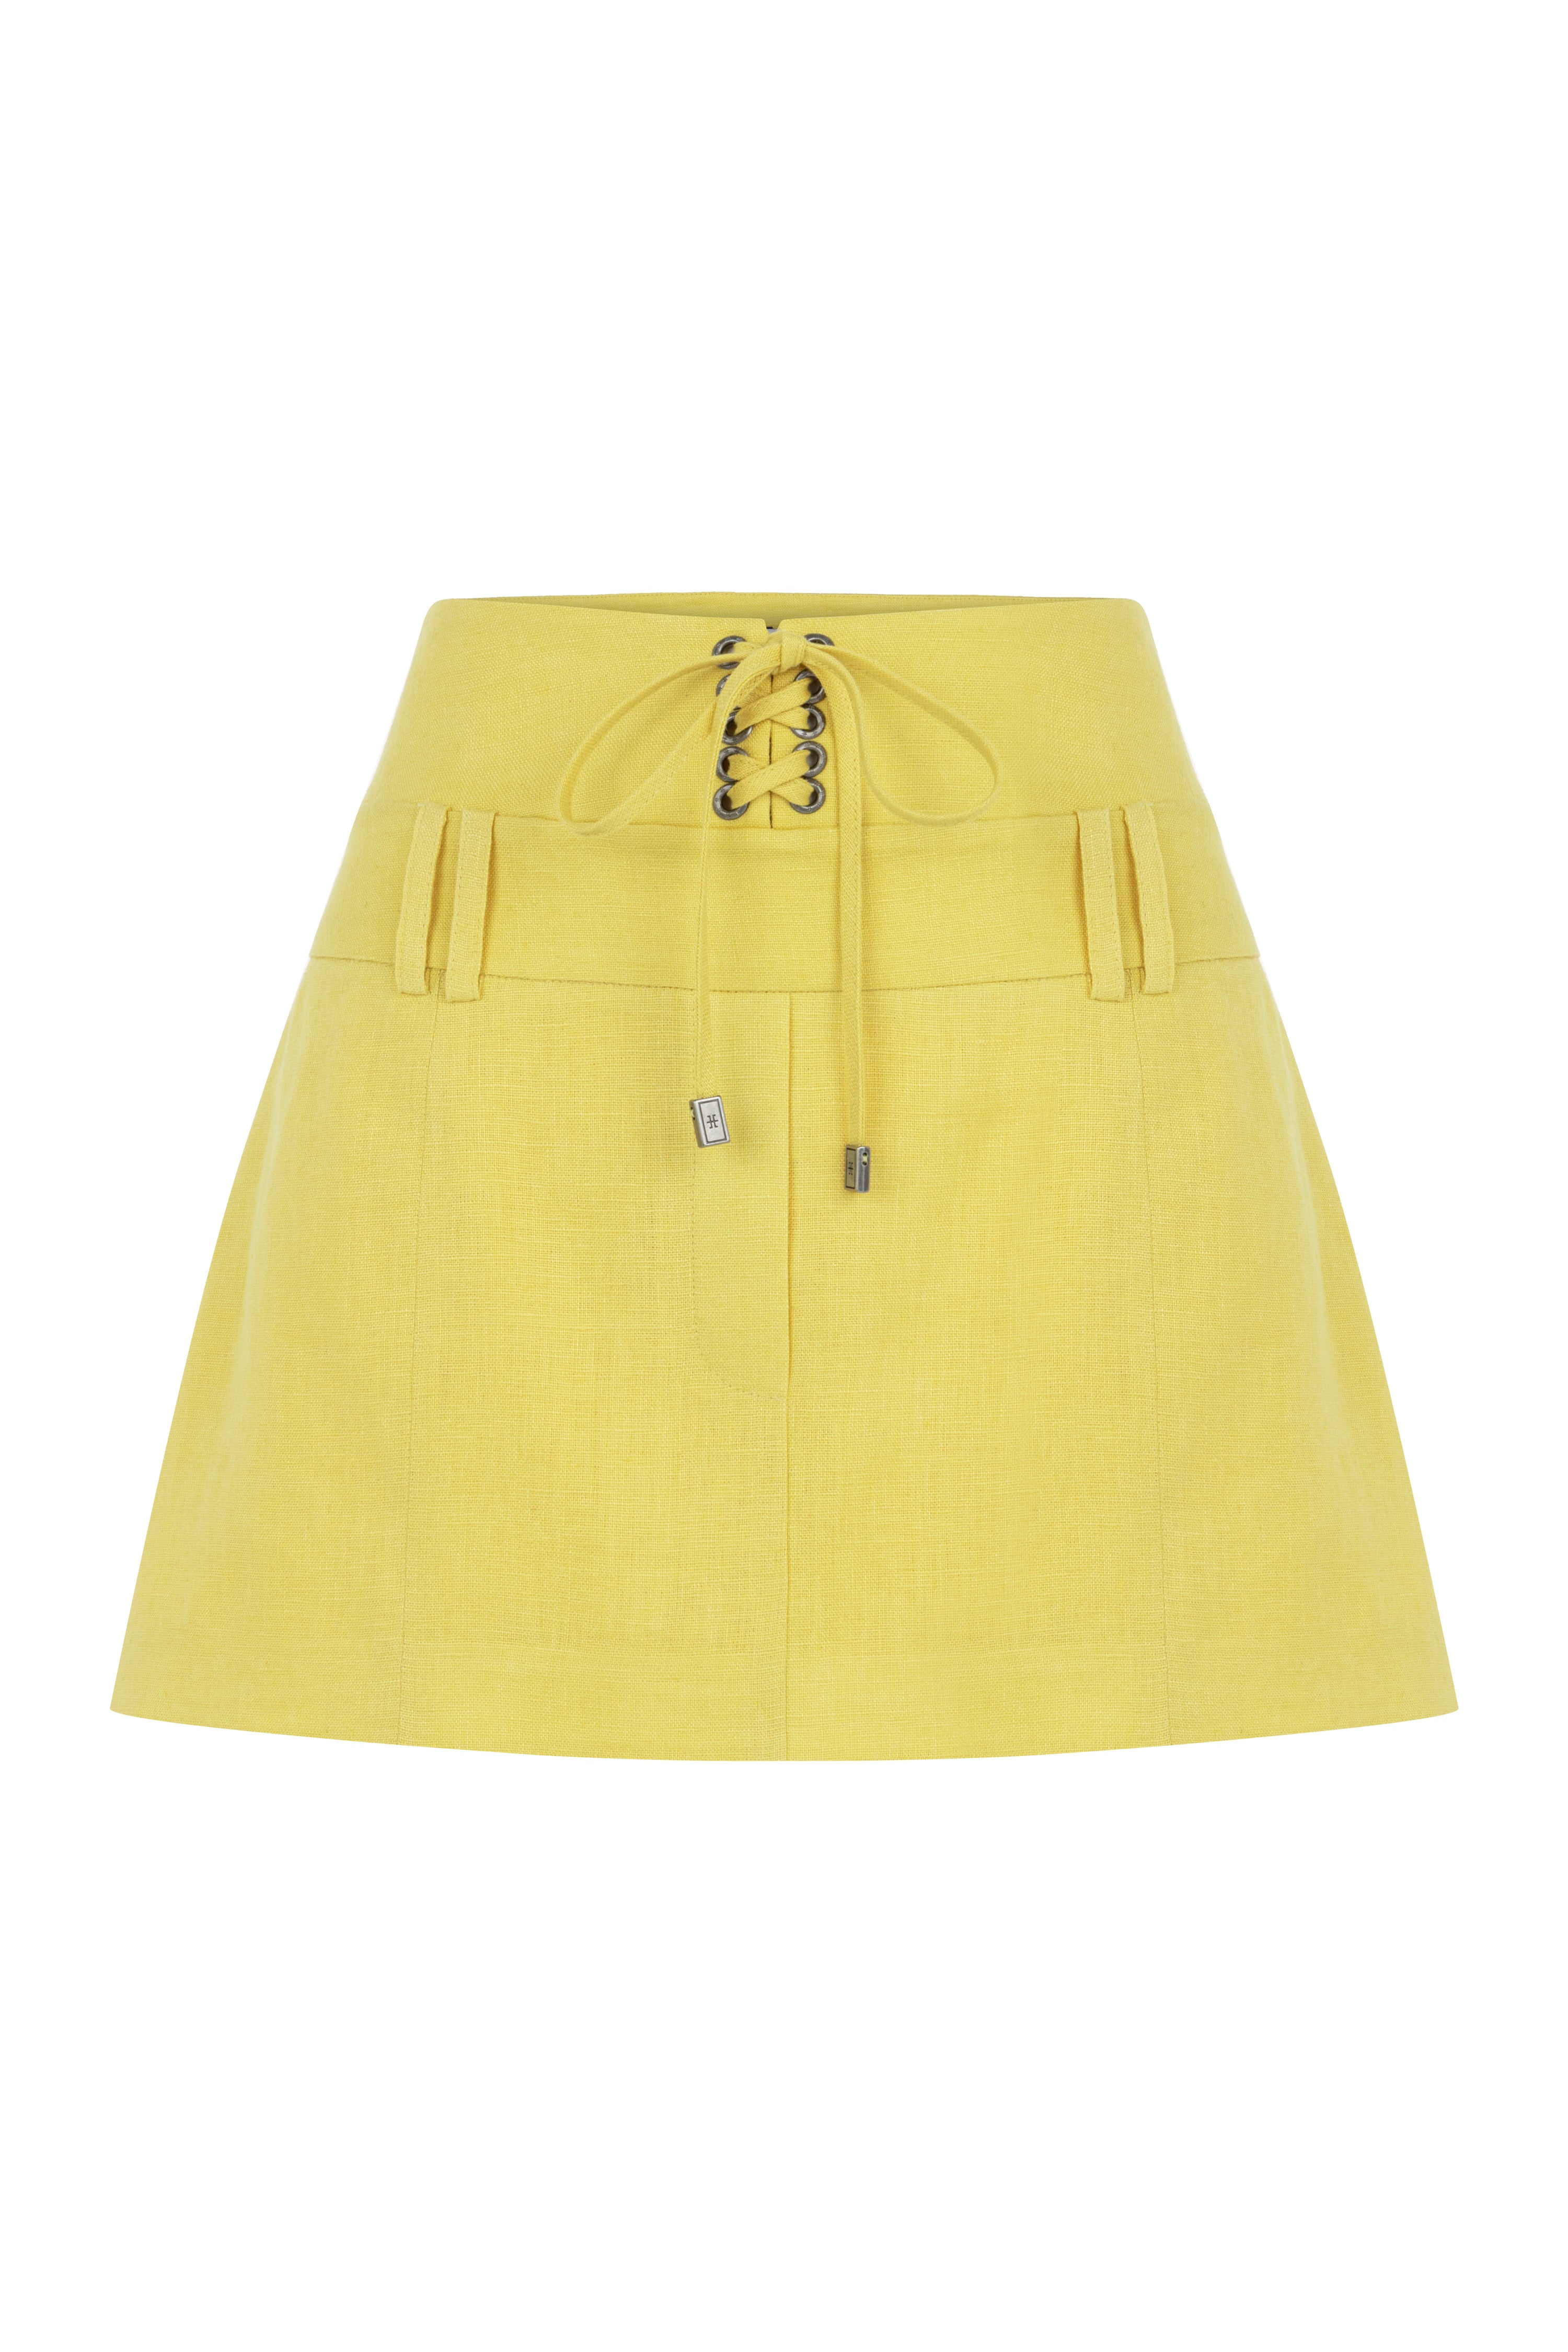 Croco Linen Skirt